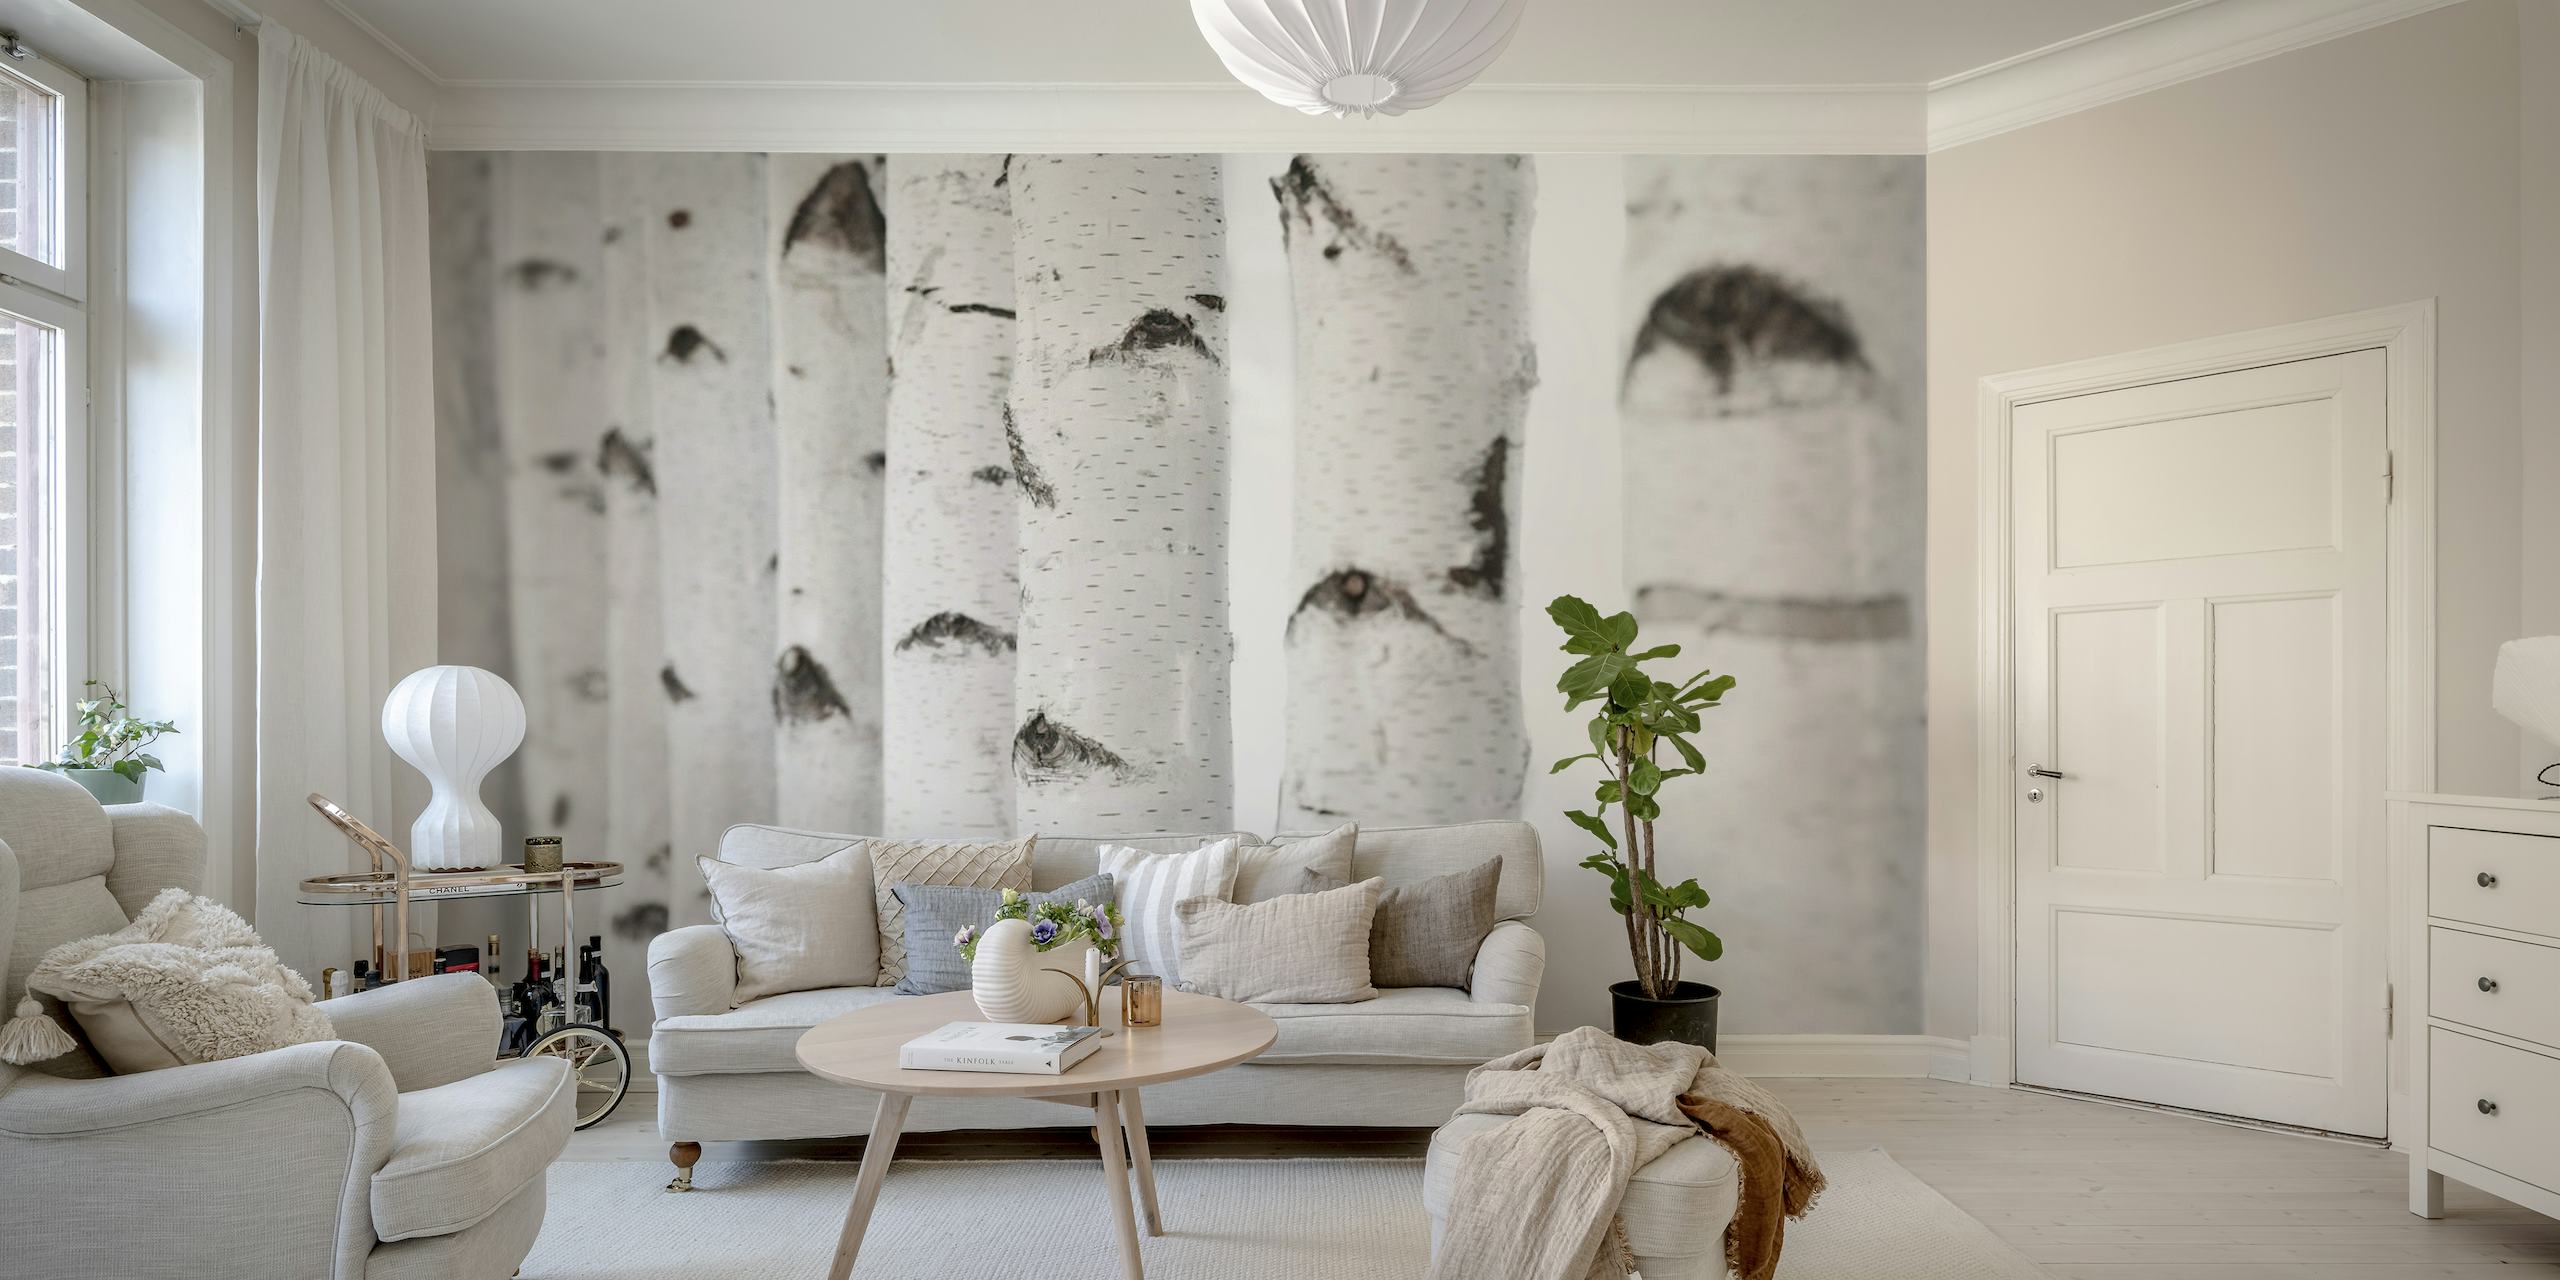 Um mural de parede com uma vista aproximada de troncos de bétula branca com marcas pretas, ideal para decoração de interiores.